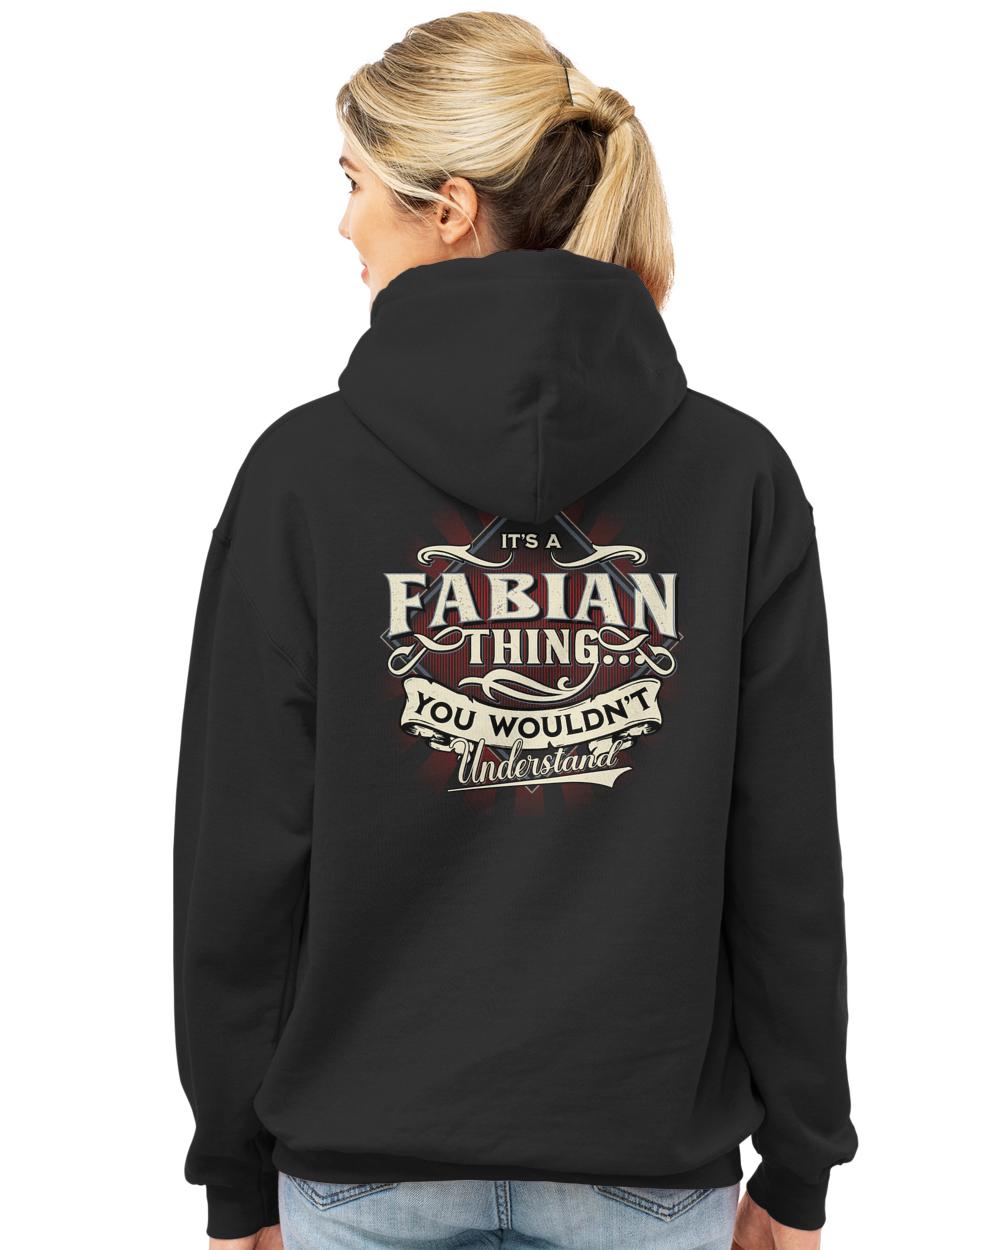 FABIAN-13K-44-01